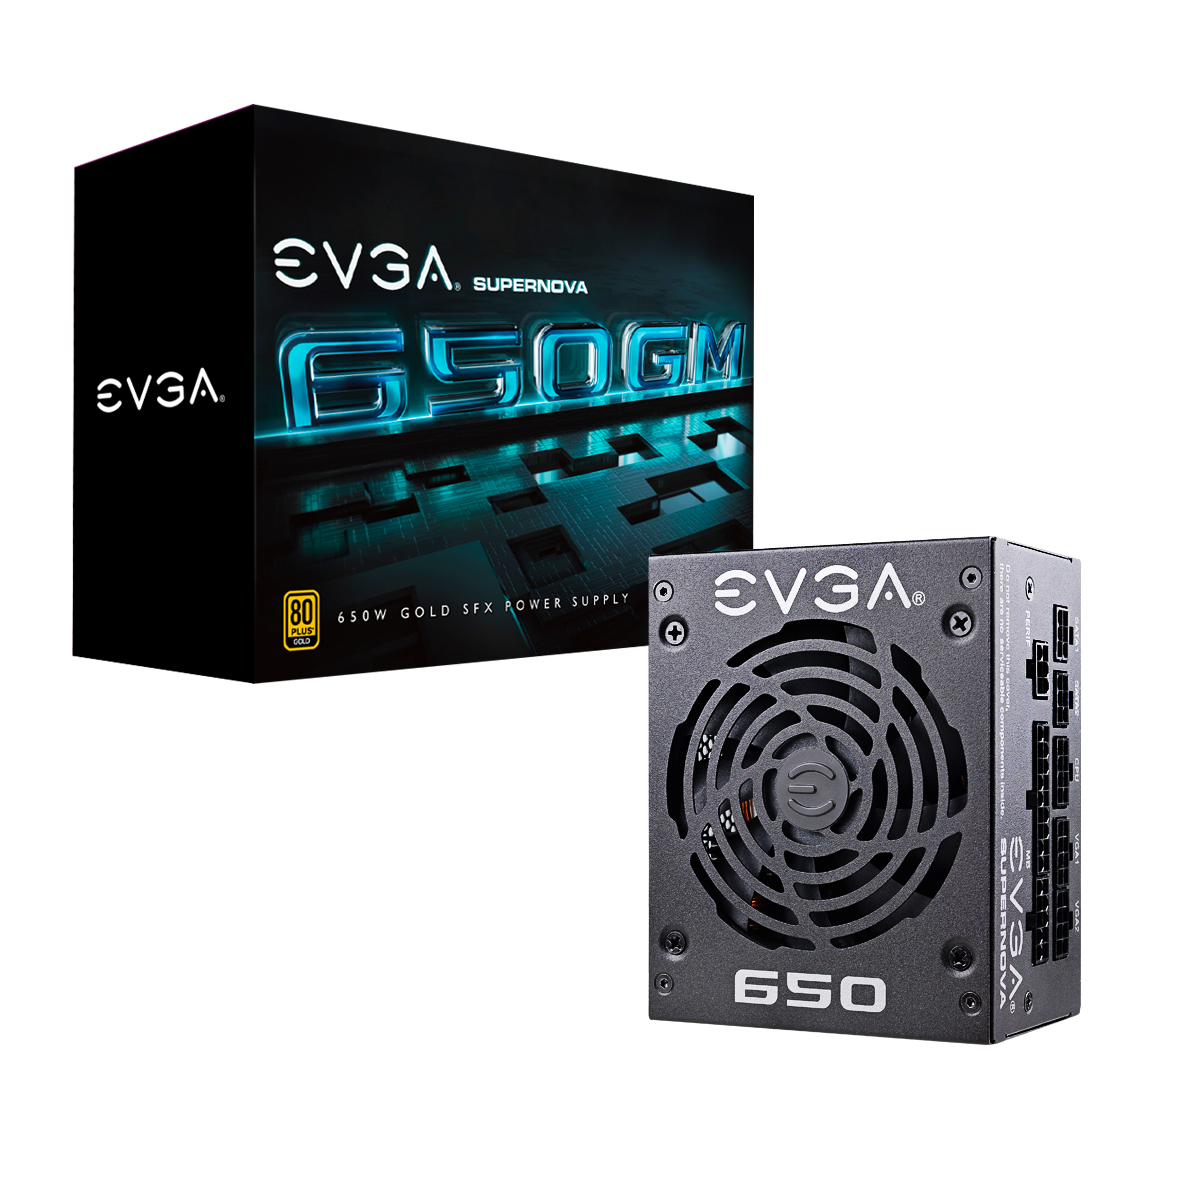 EVGA 650GM 650w全模 SFX小电源 ECO静音设计可搭配ITX迷你机箱